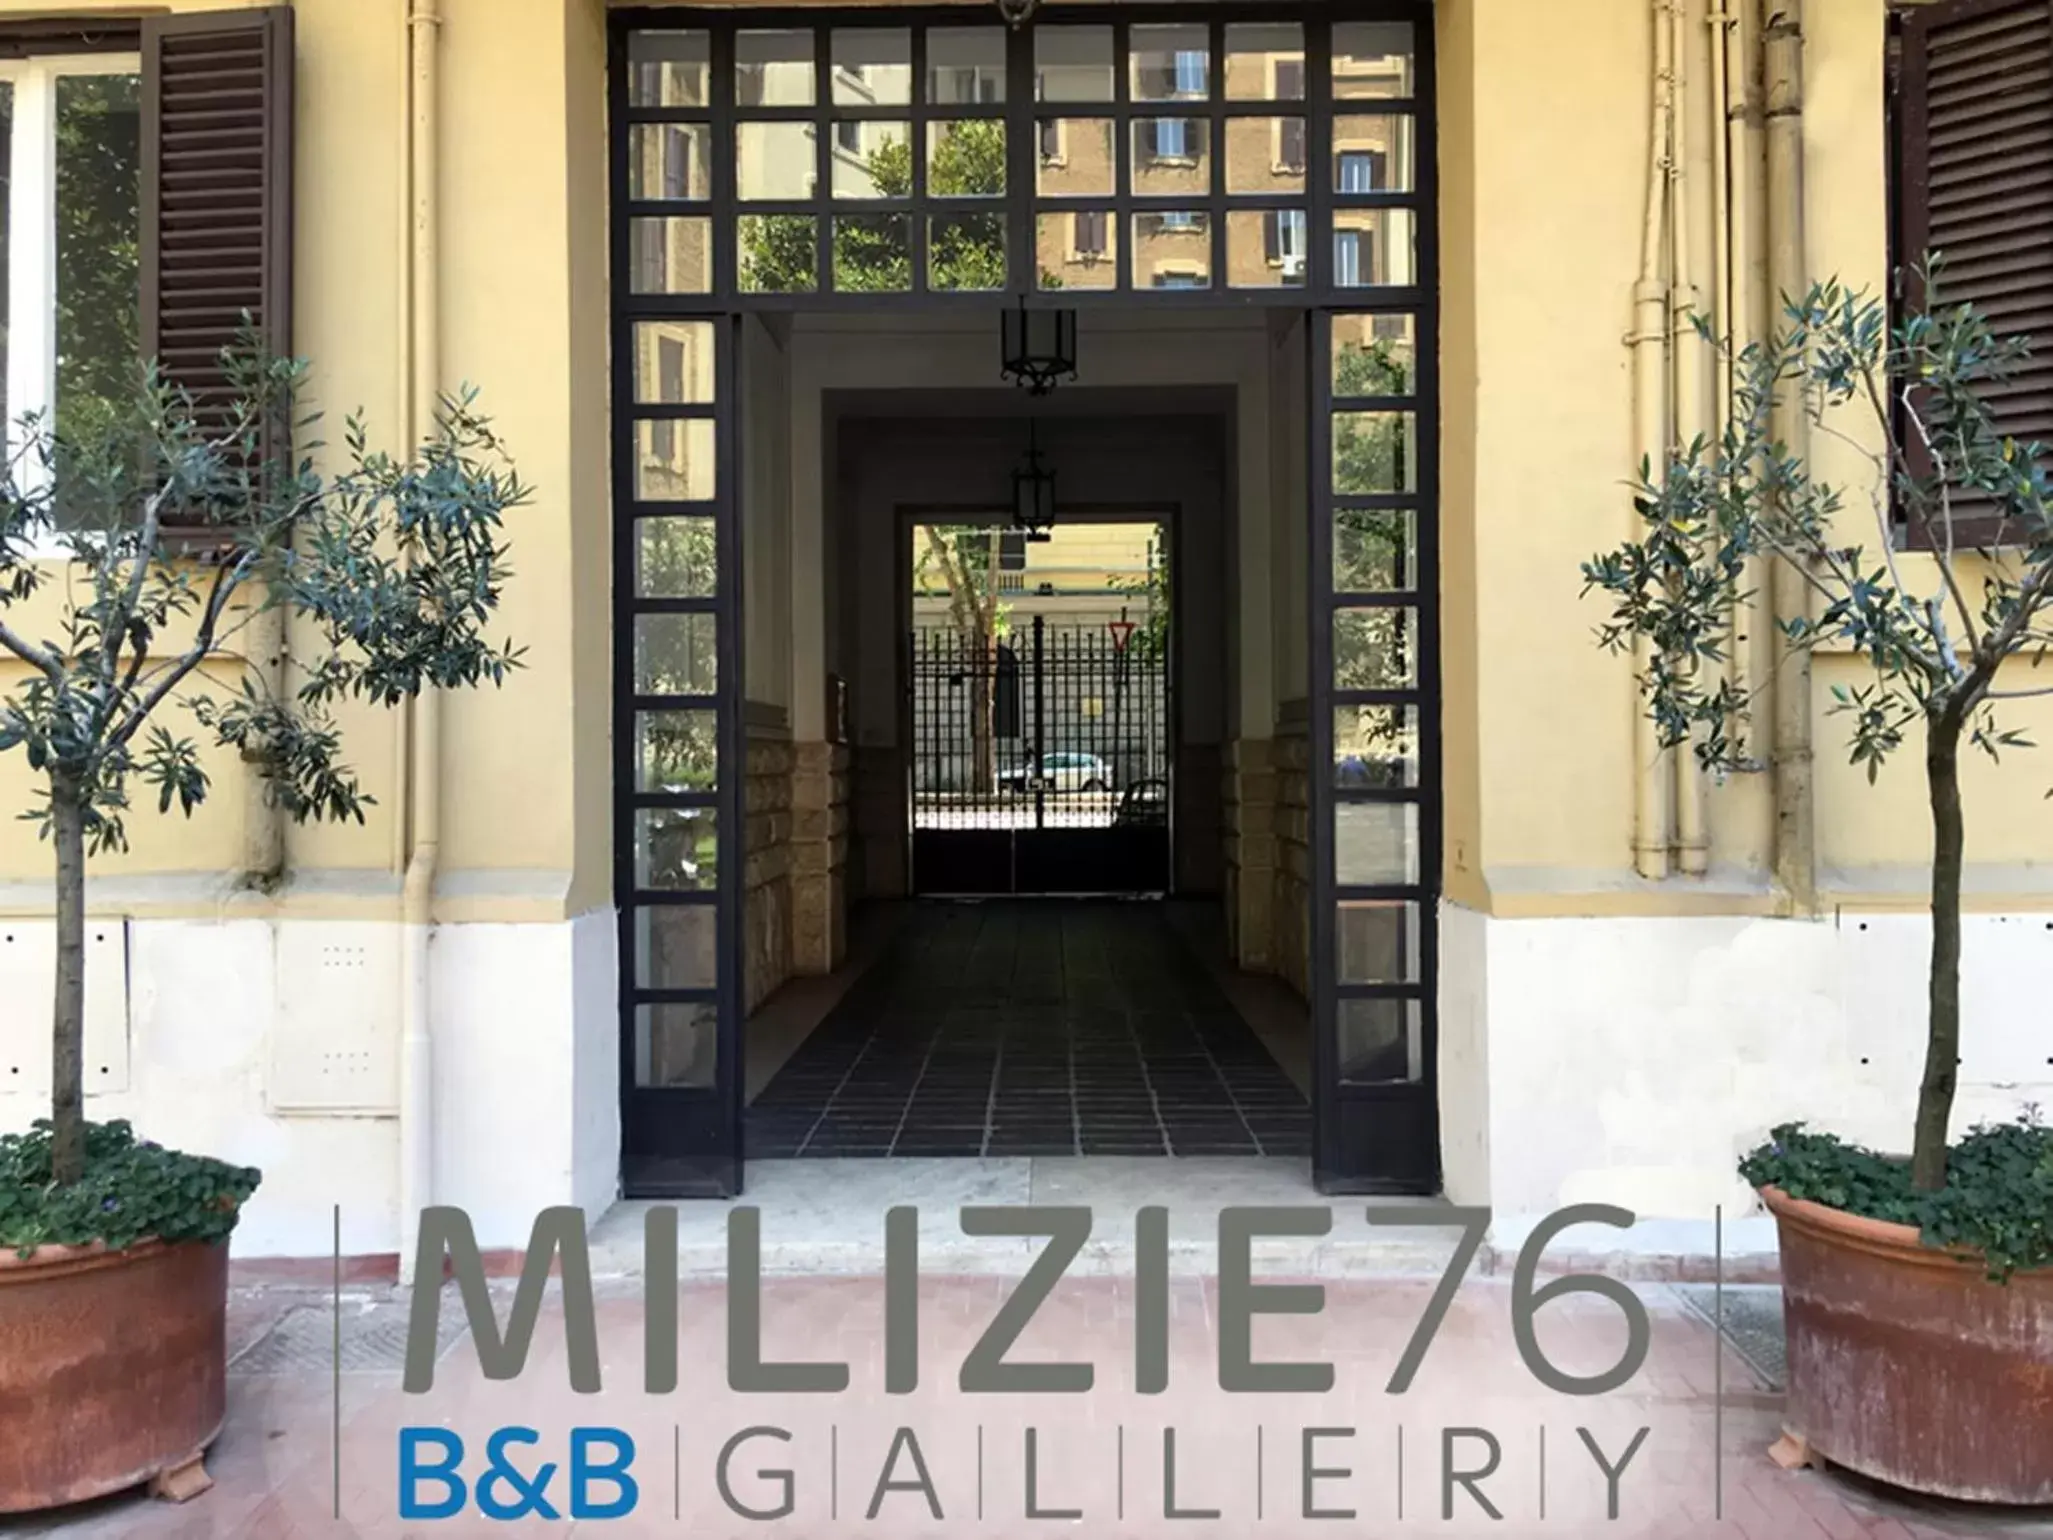 Facade/Entrance in Milizie 76 Gallery